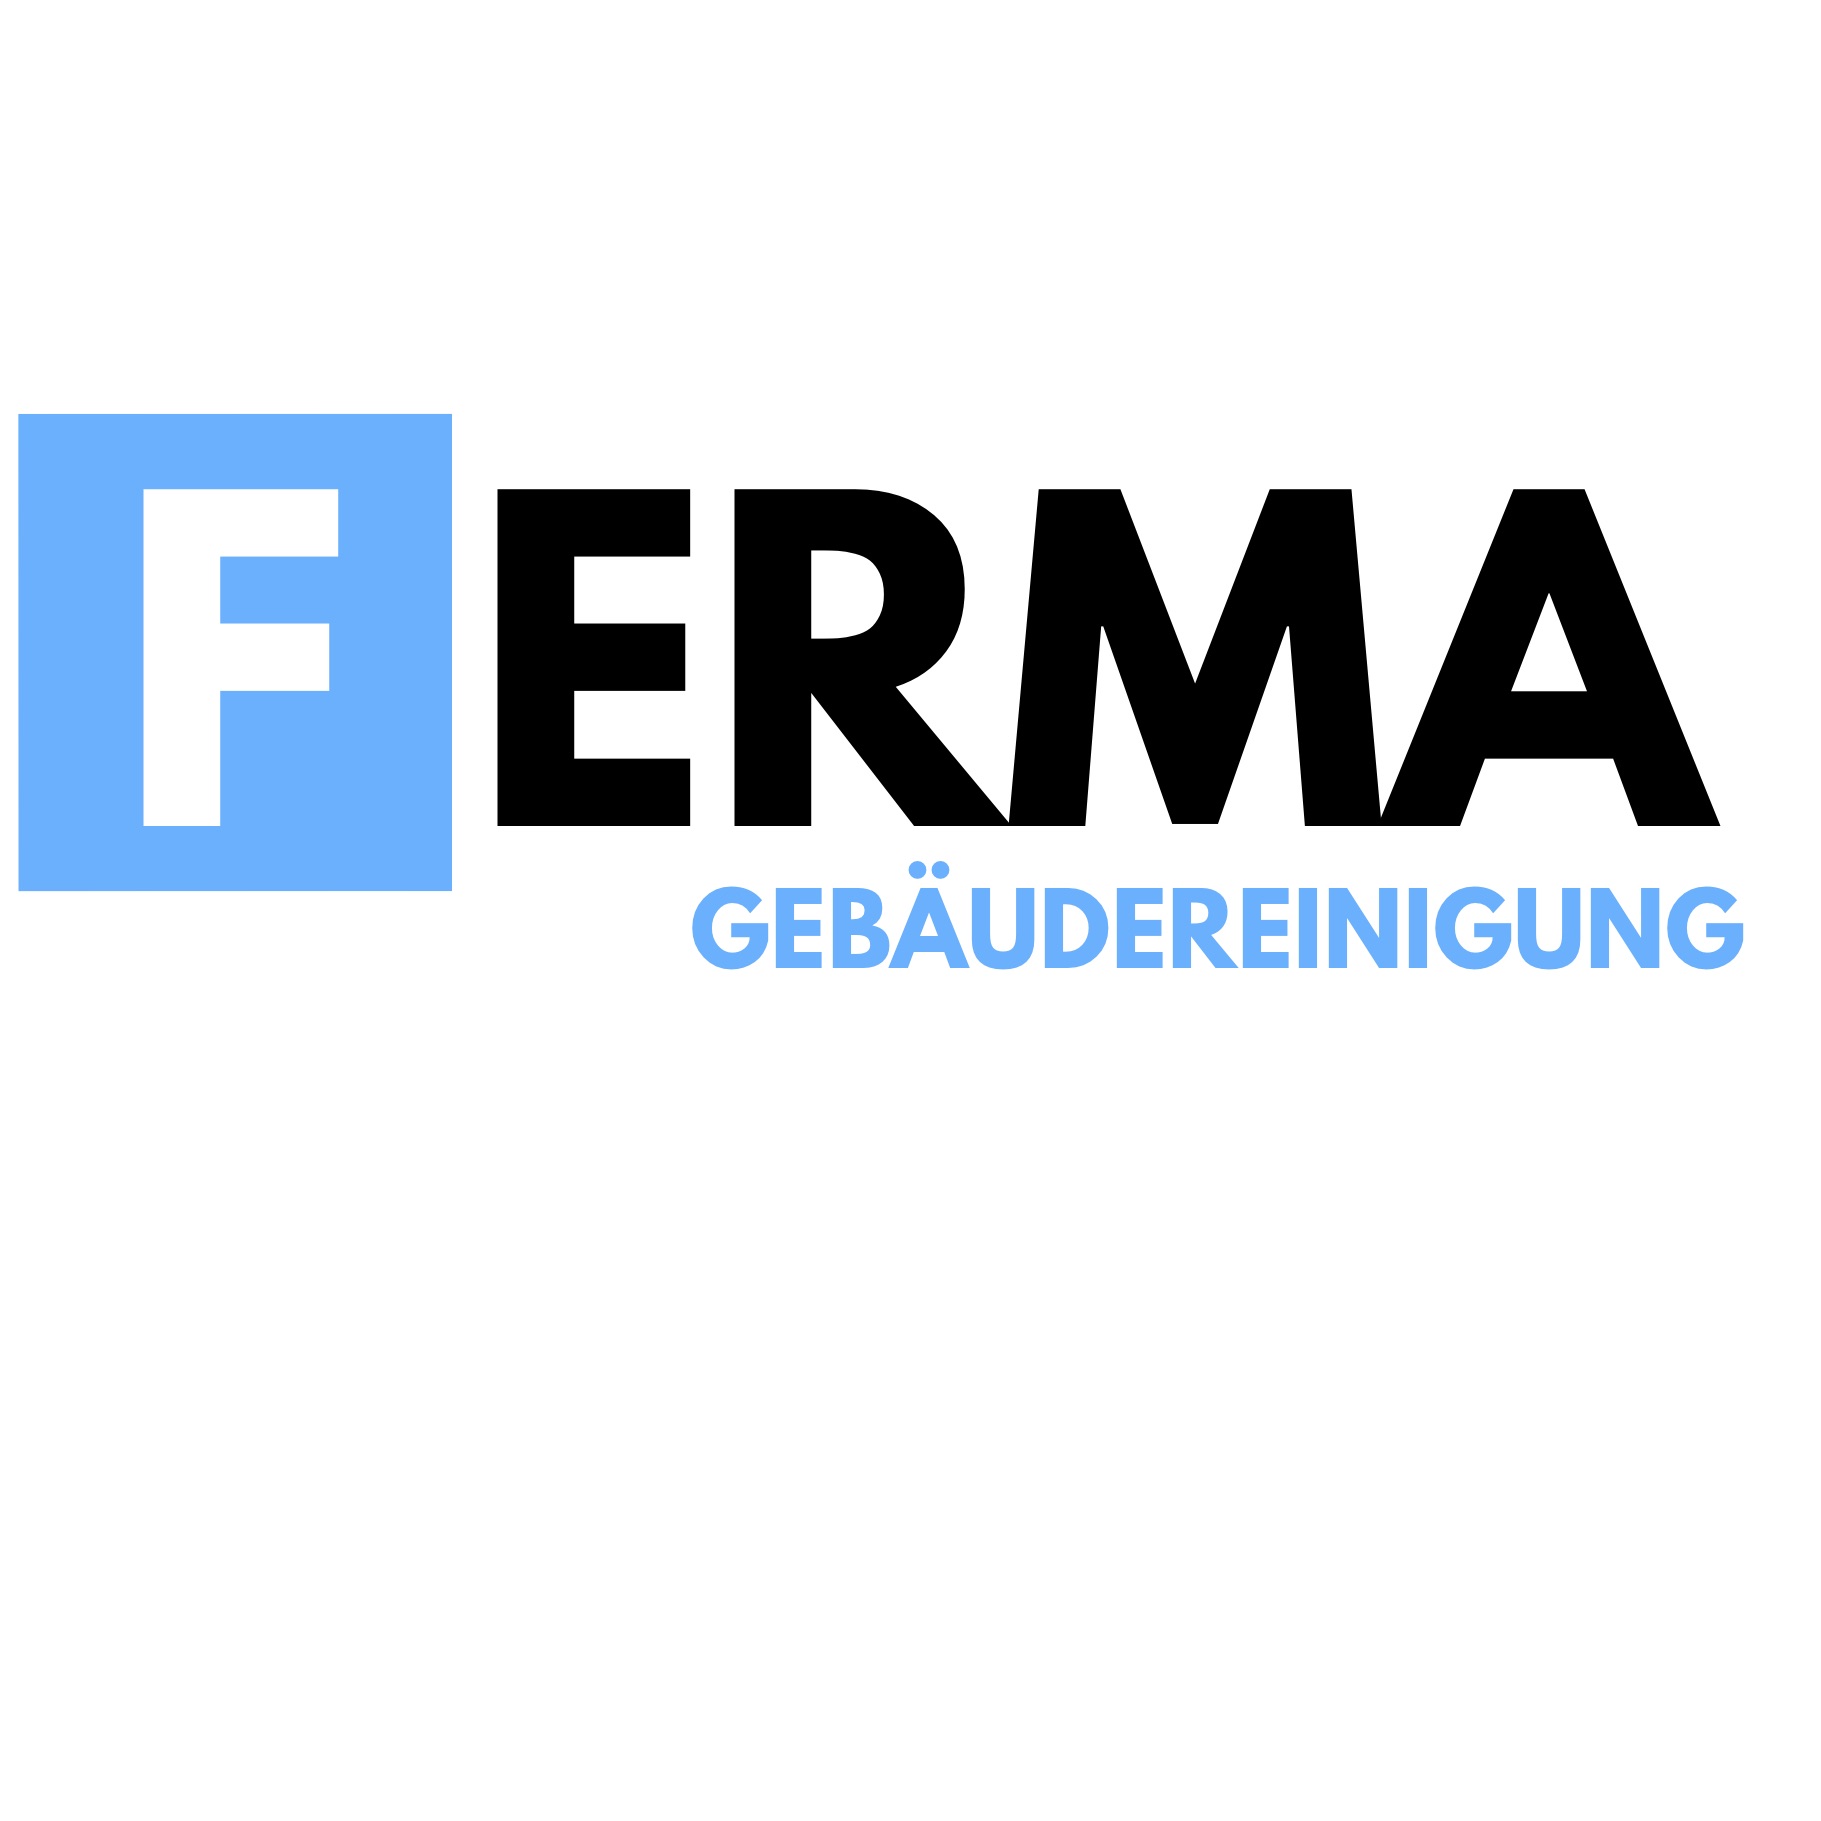 Bild 1 Gebäudereinigung FERMA in Düsseldorf